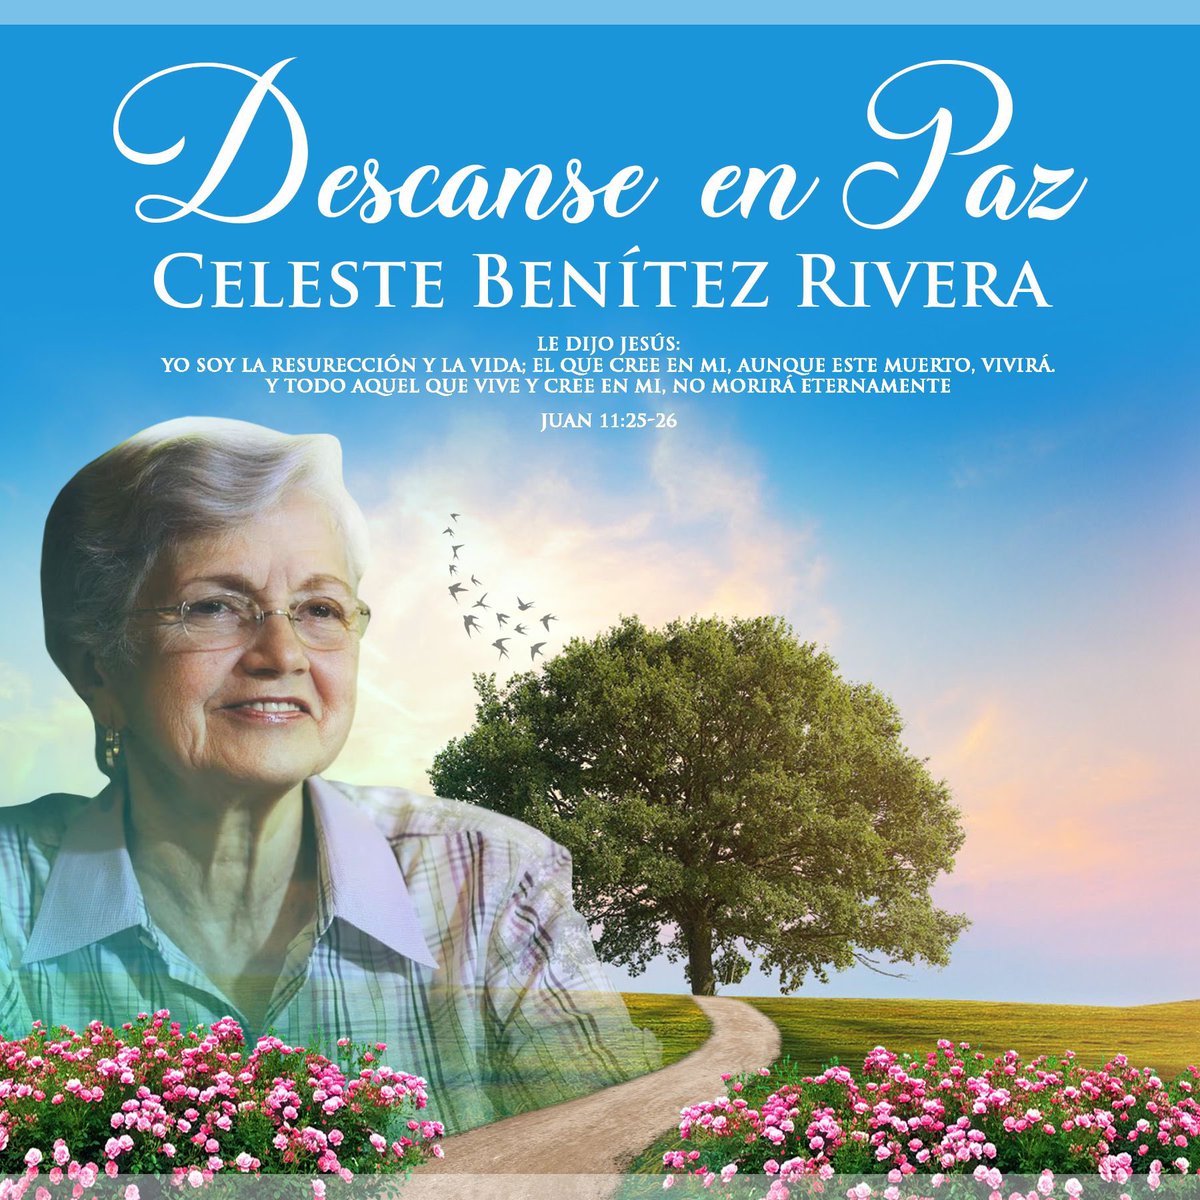 Un extraordinario legado de servicio público es el que siempre recordaremos de una de las mujeres más influyentes en la política puertorriqueña: la periodista, educadora y exsenadora Celeste Benítez Rivera.